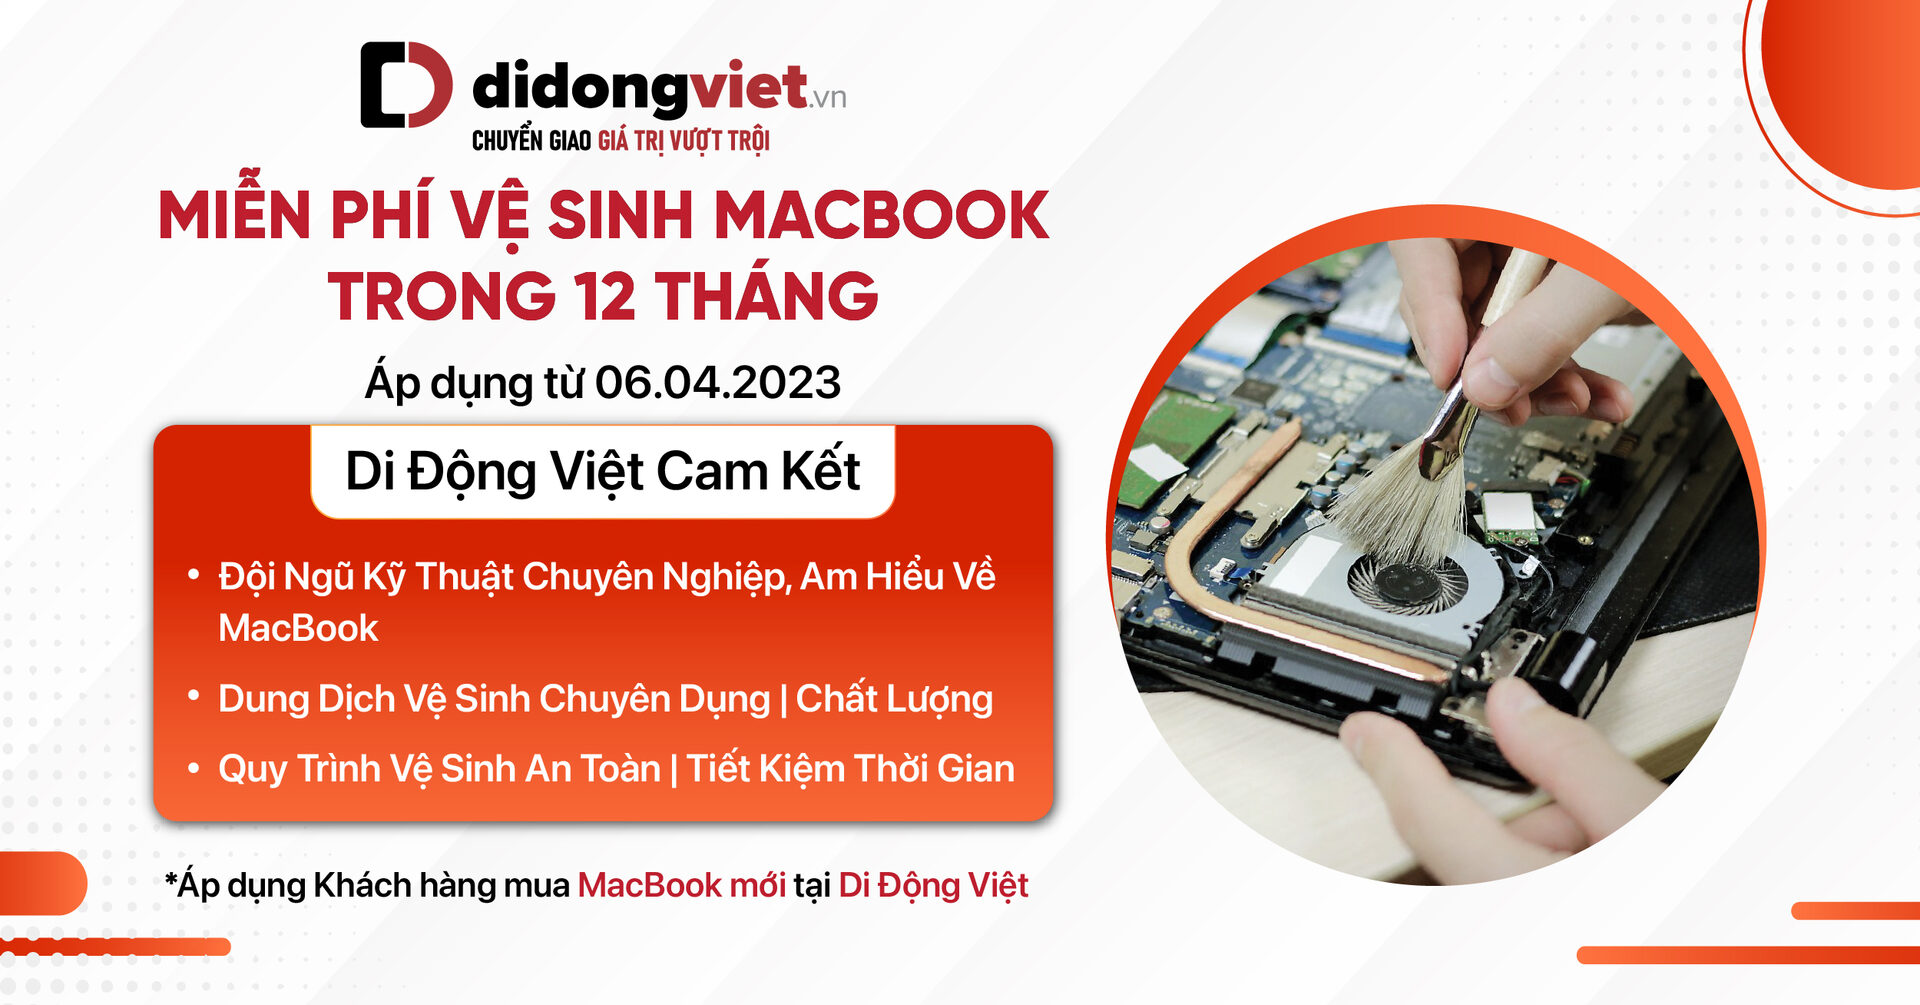 Di Động Việt miễn phí vệ sinh MacBook trong 12 tháng trên toàn quốc